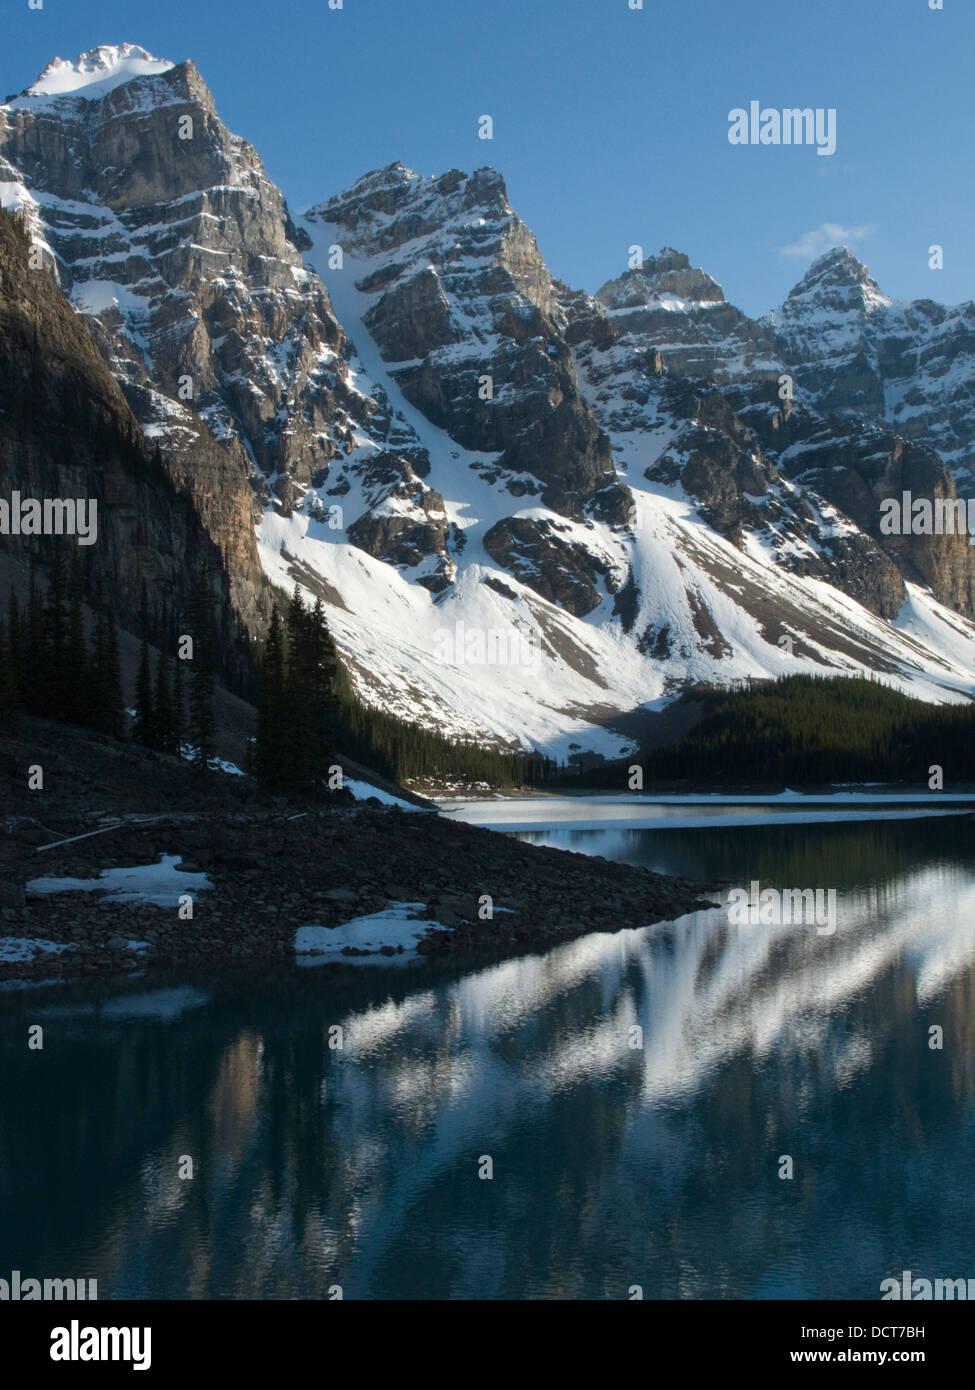 El lago Moraine Valle de 10 picos del Parque Nacional de Banff Alberta Canada Foto de stock